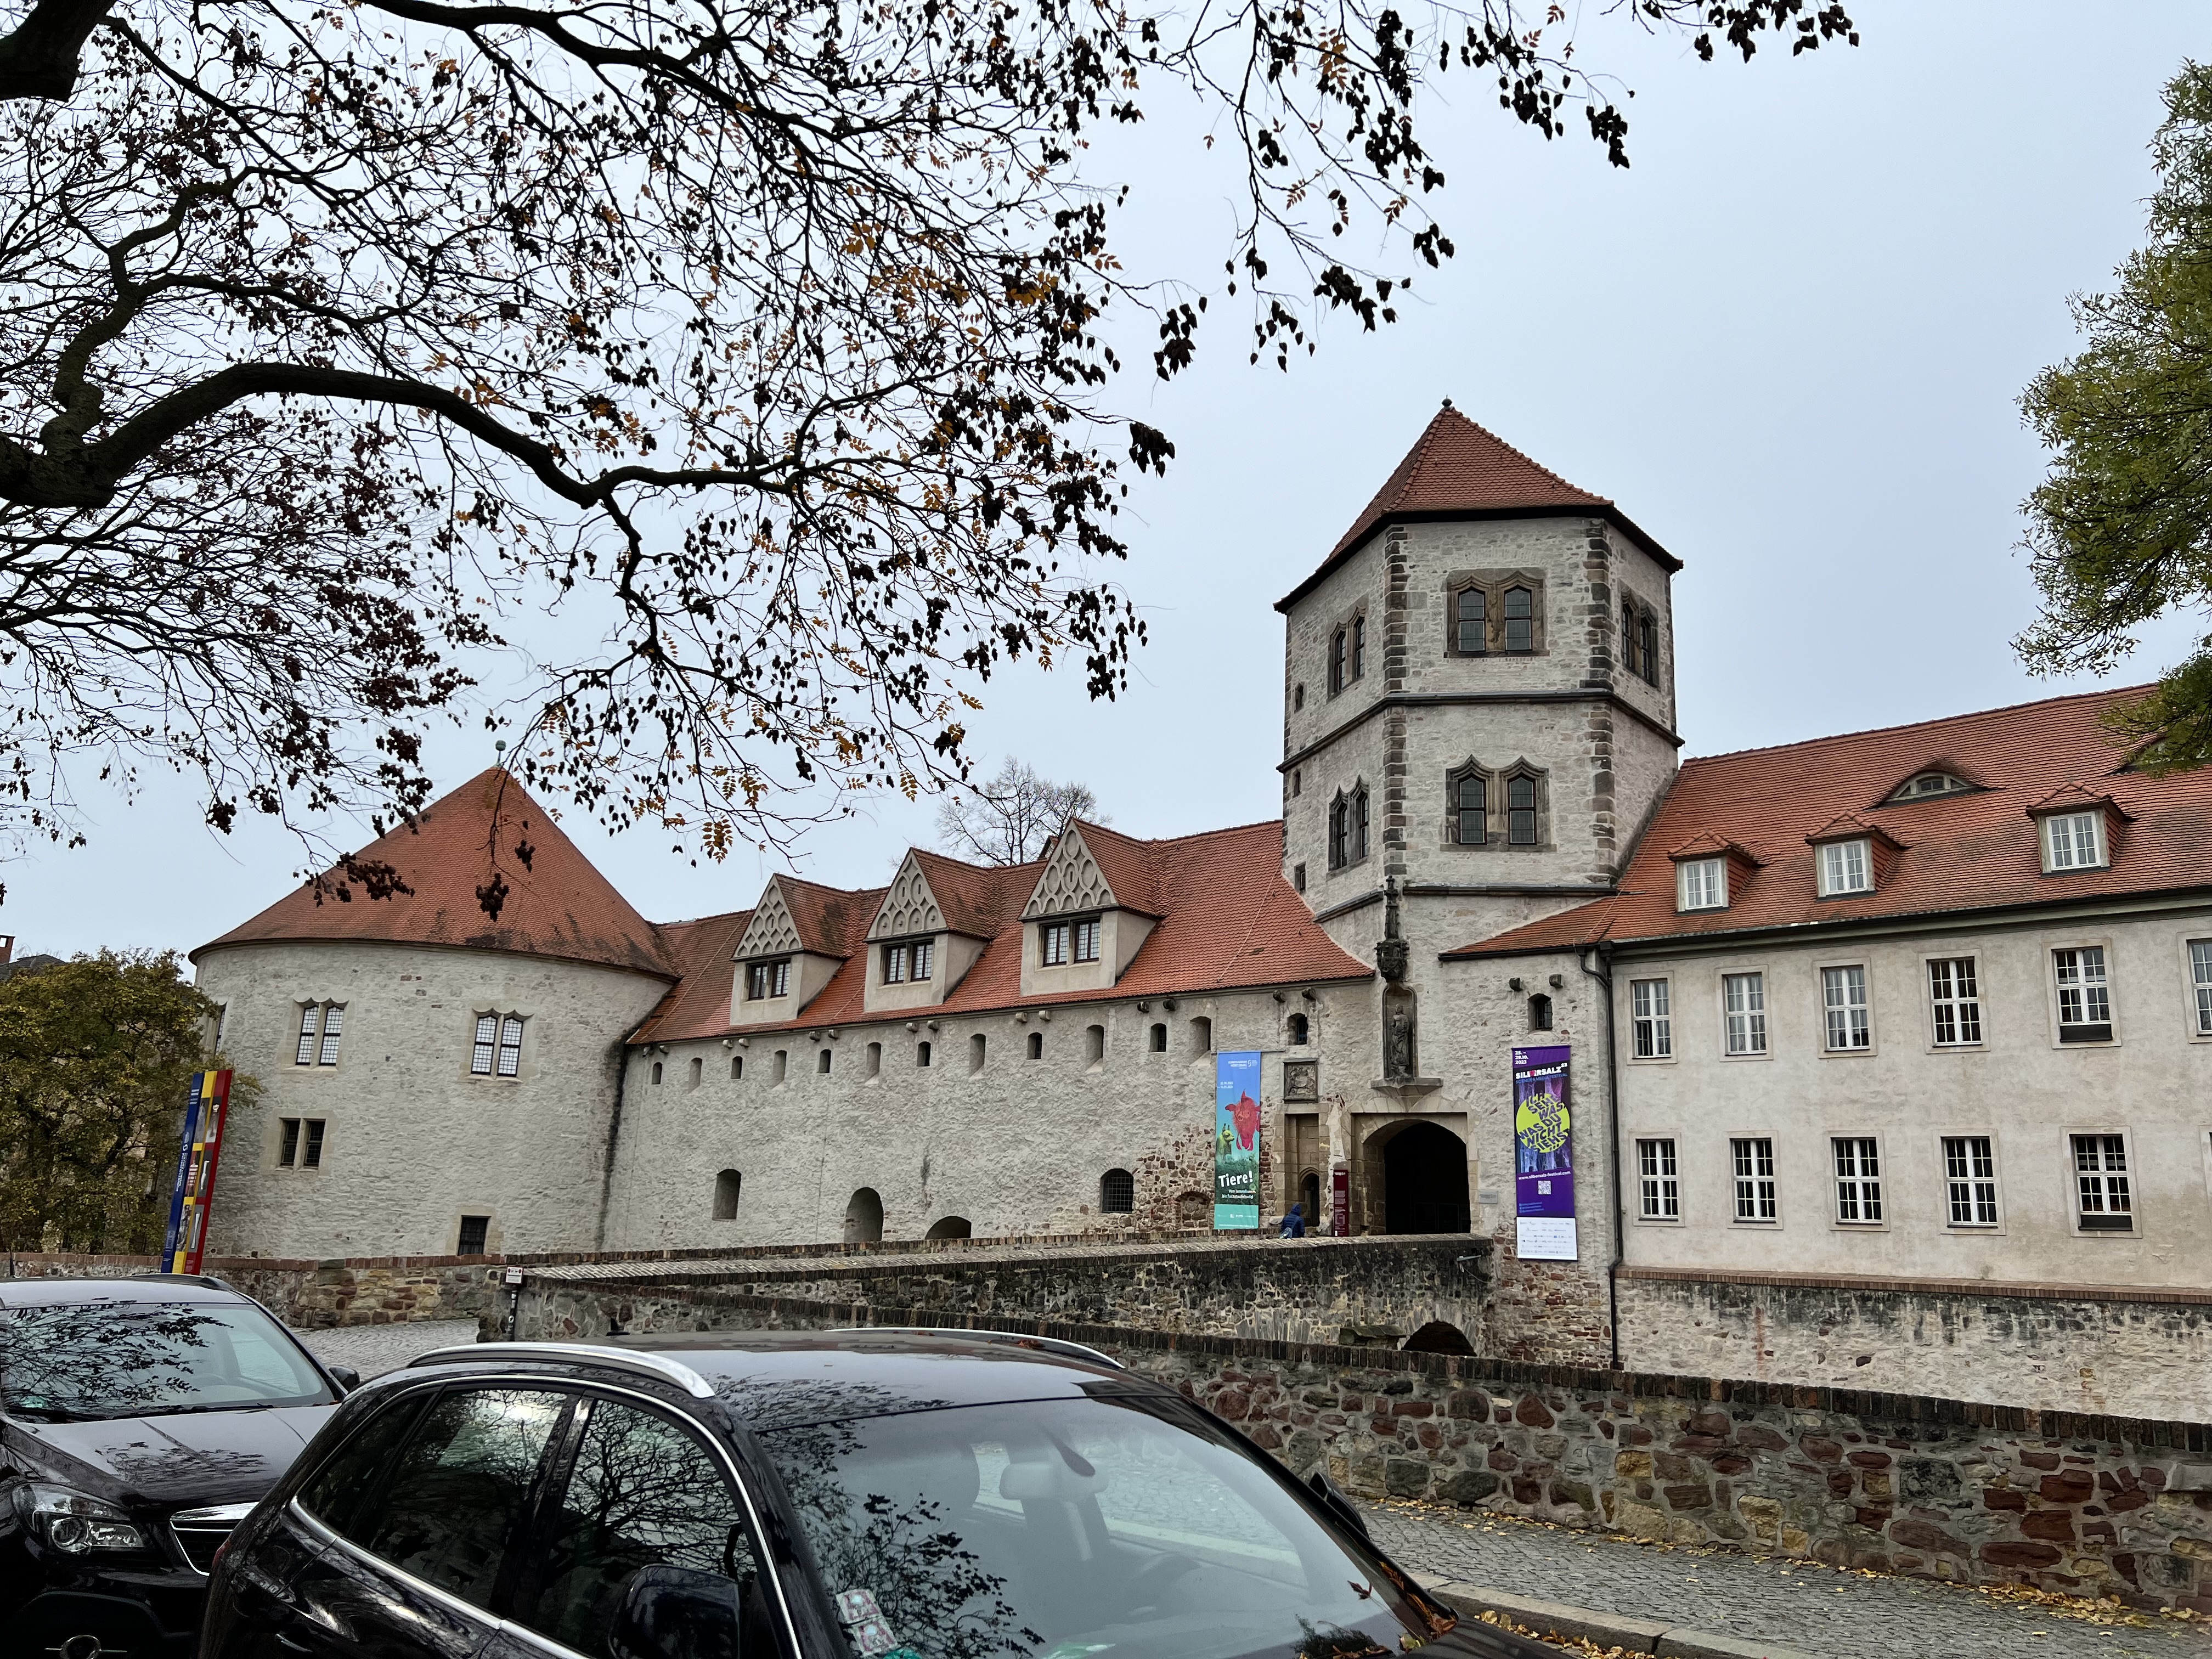 Halle, Moritzburg